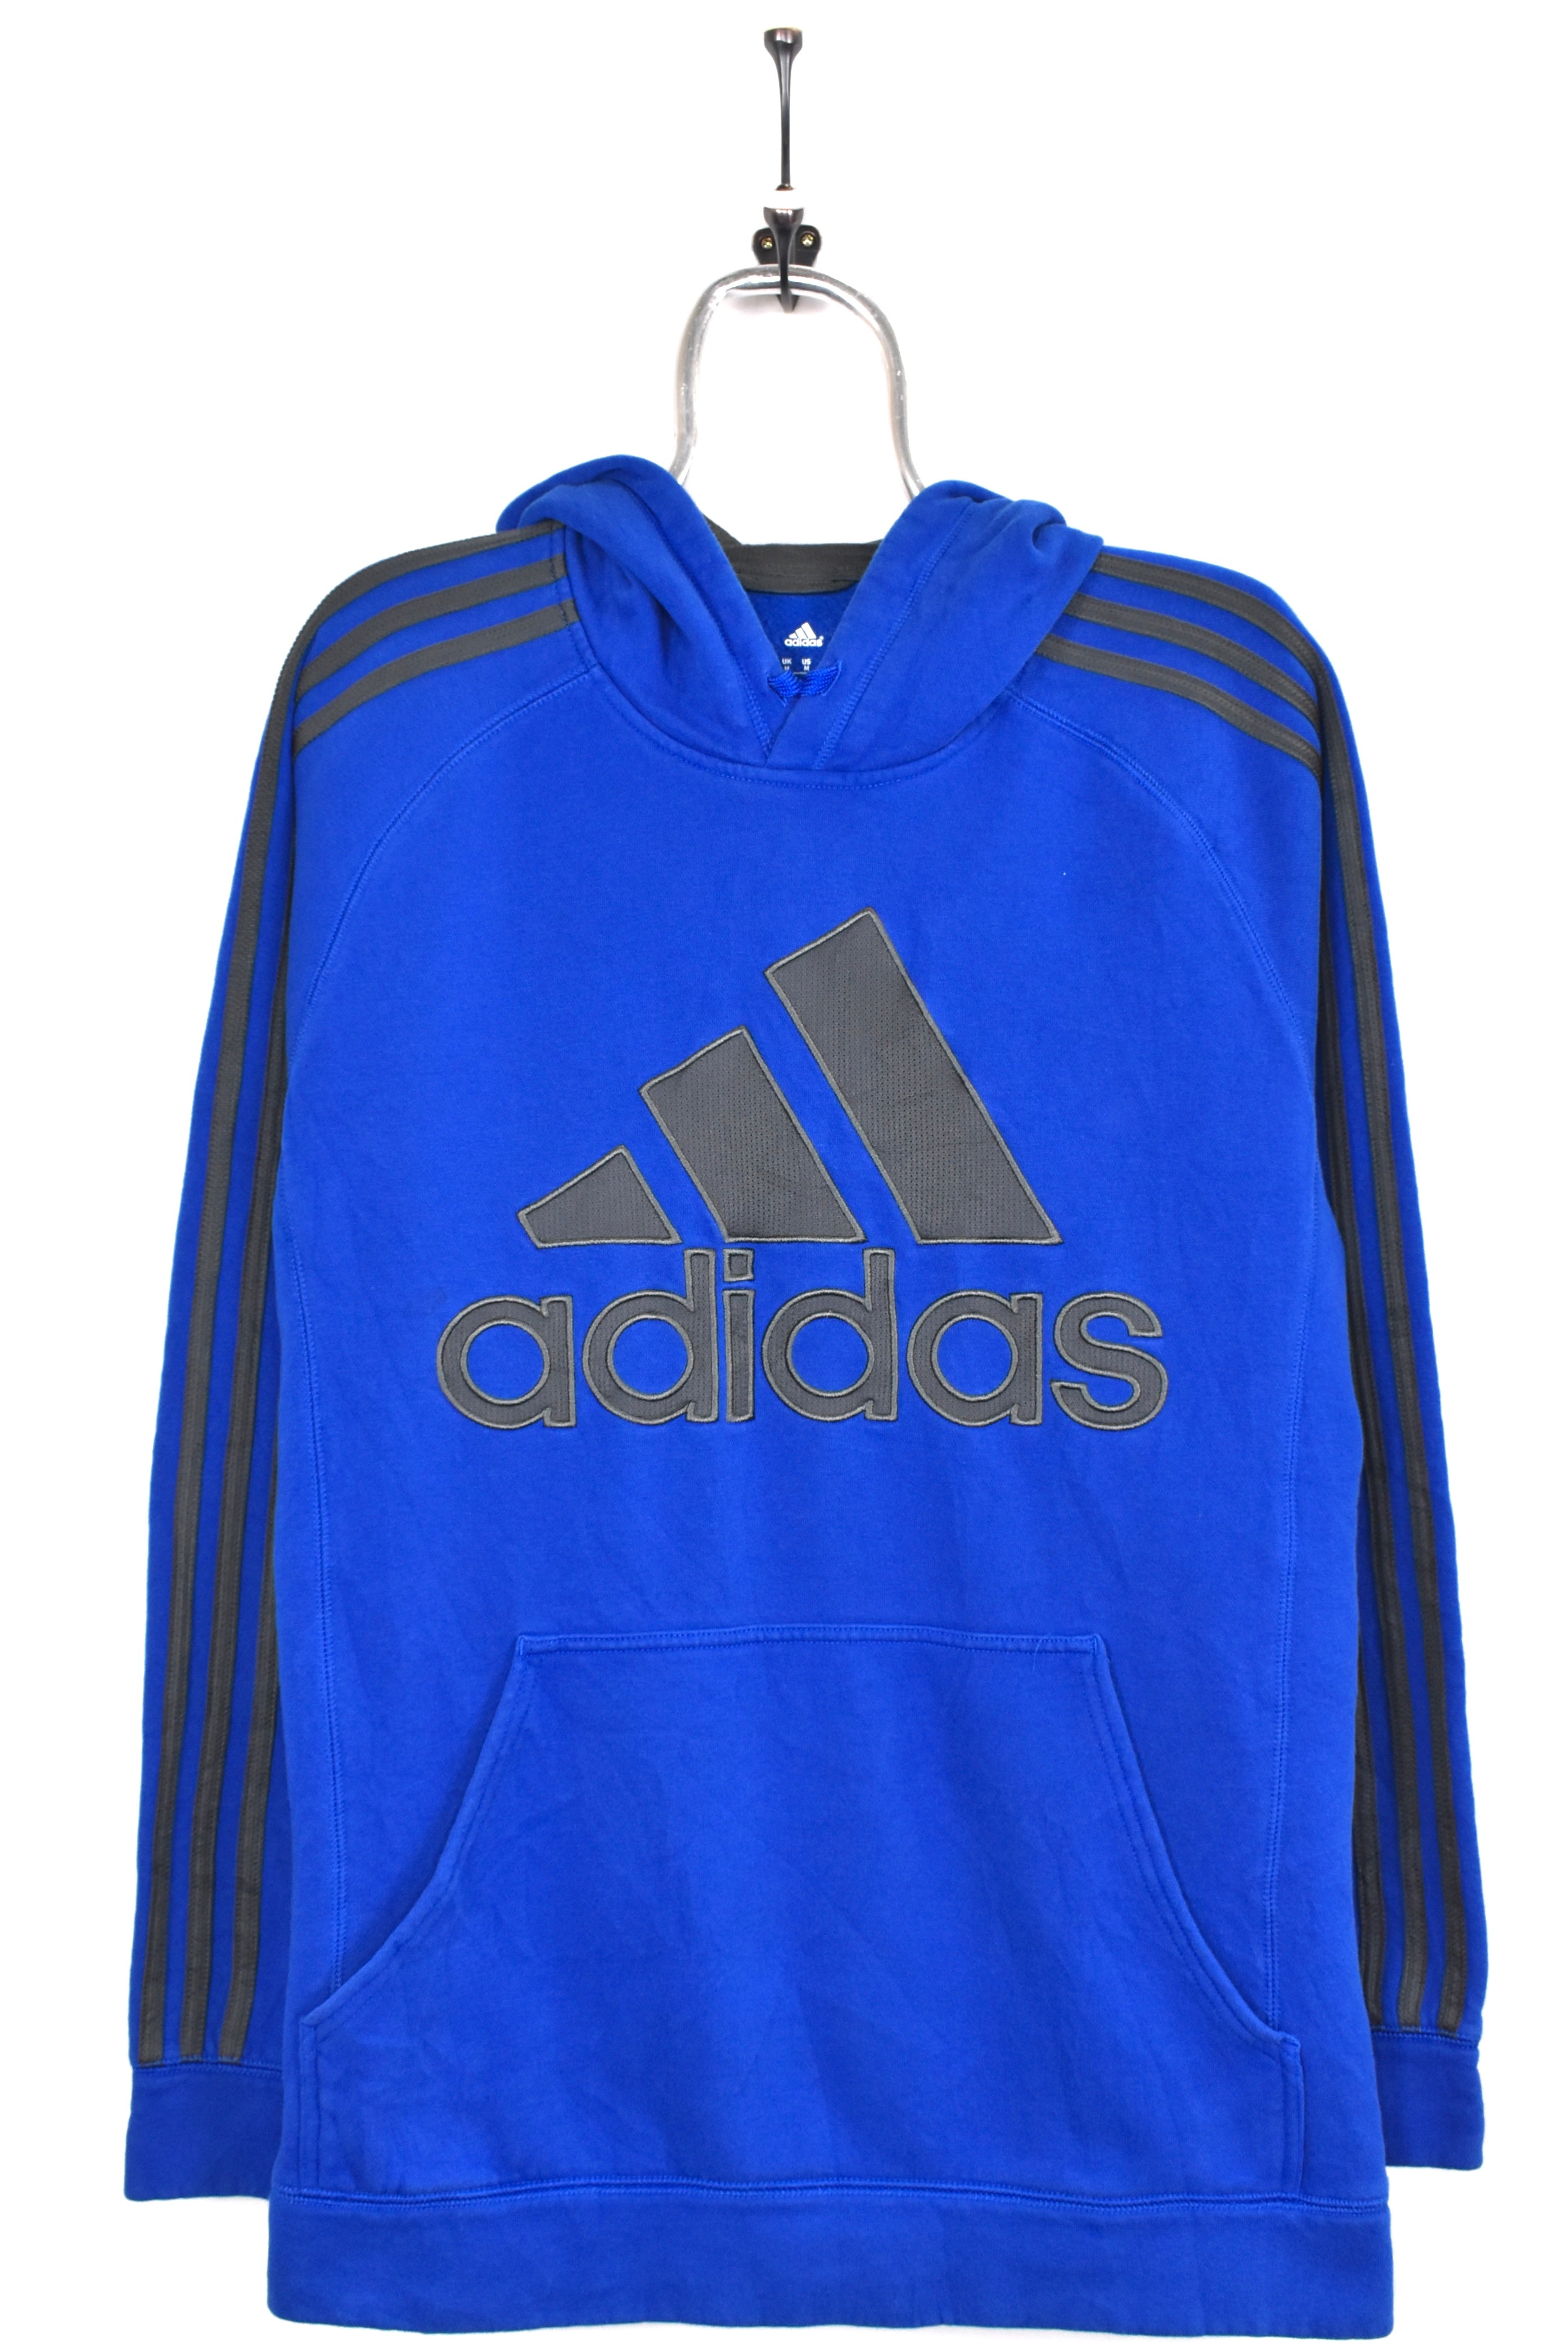 Vintage Adidas hoodie, blue embroidered sweatshirt - AU Large ADIDAS